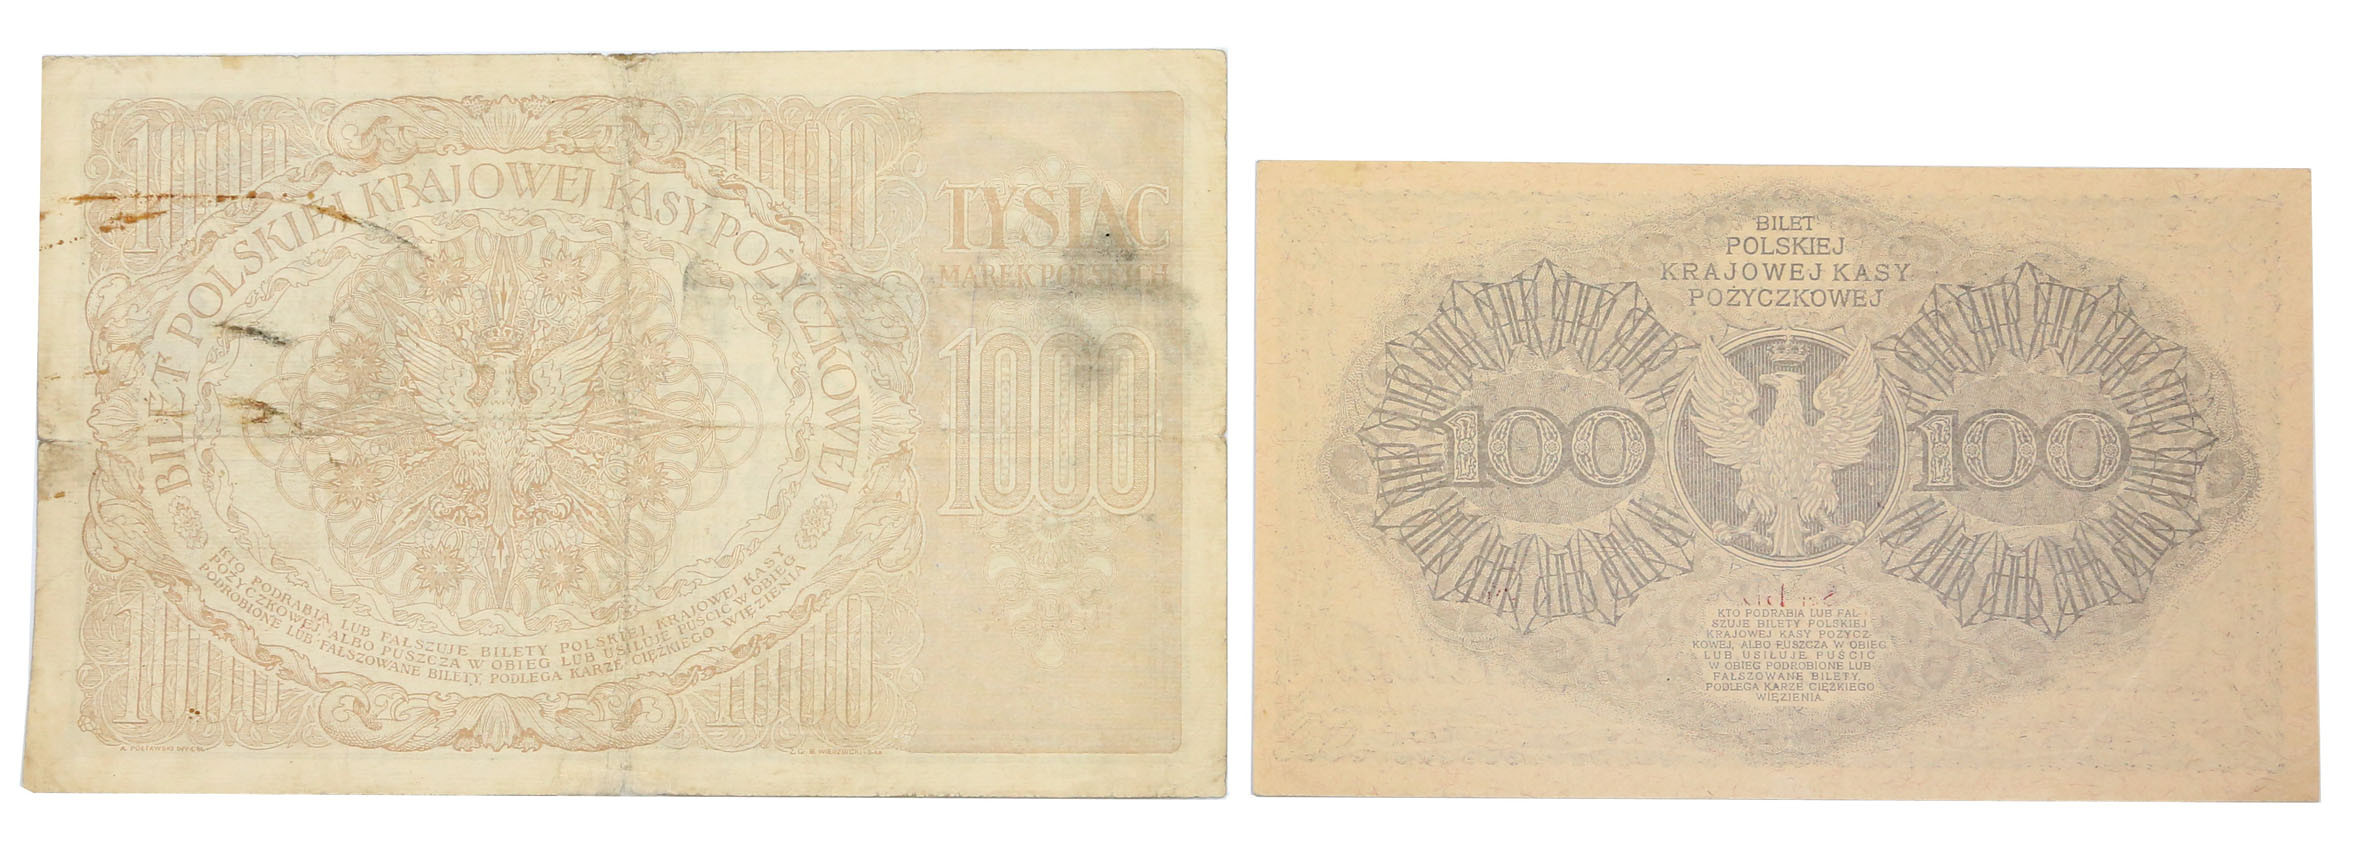 100, 1.000 marek polskich 1919, zestaw 2 banknotów